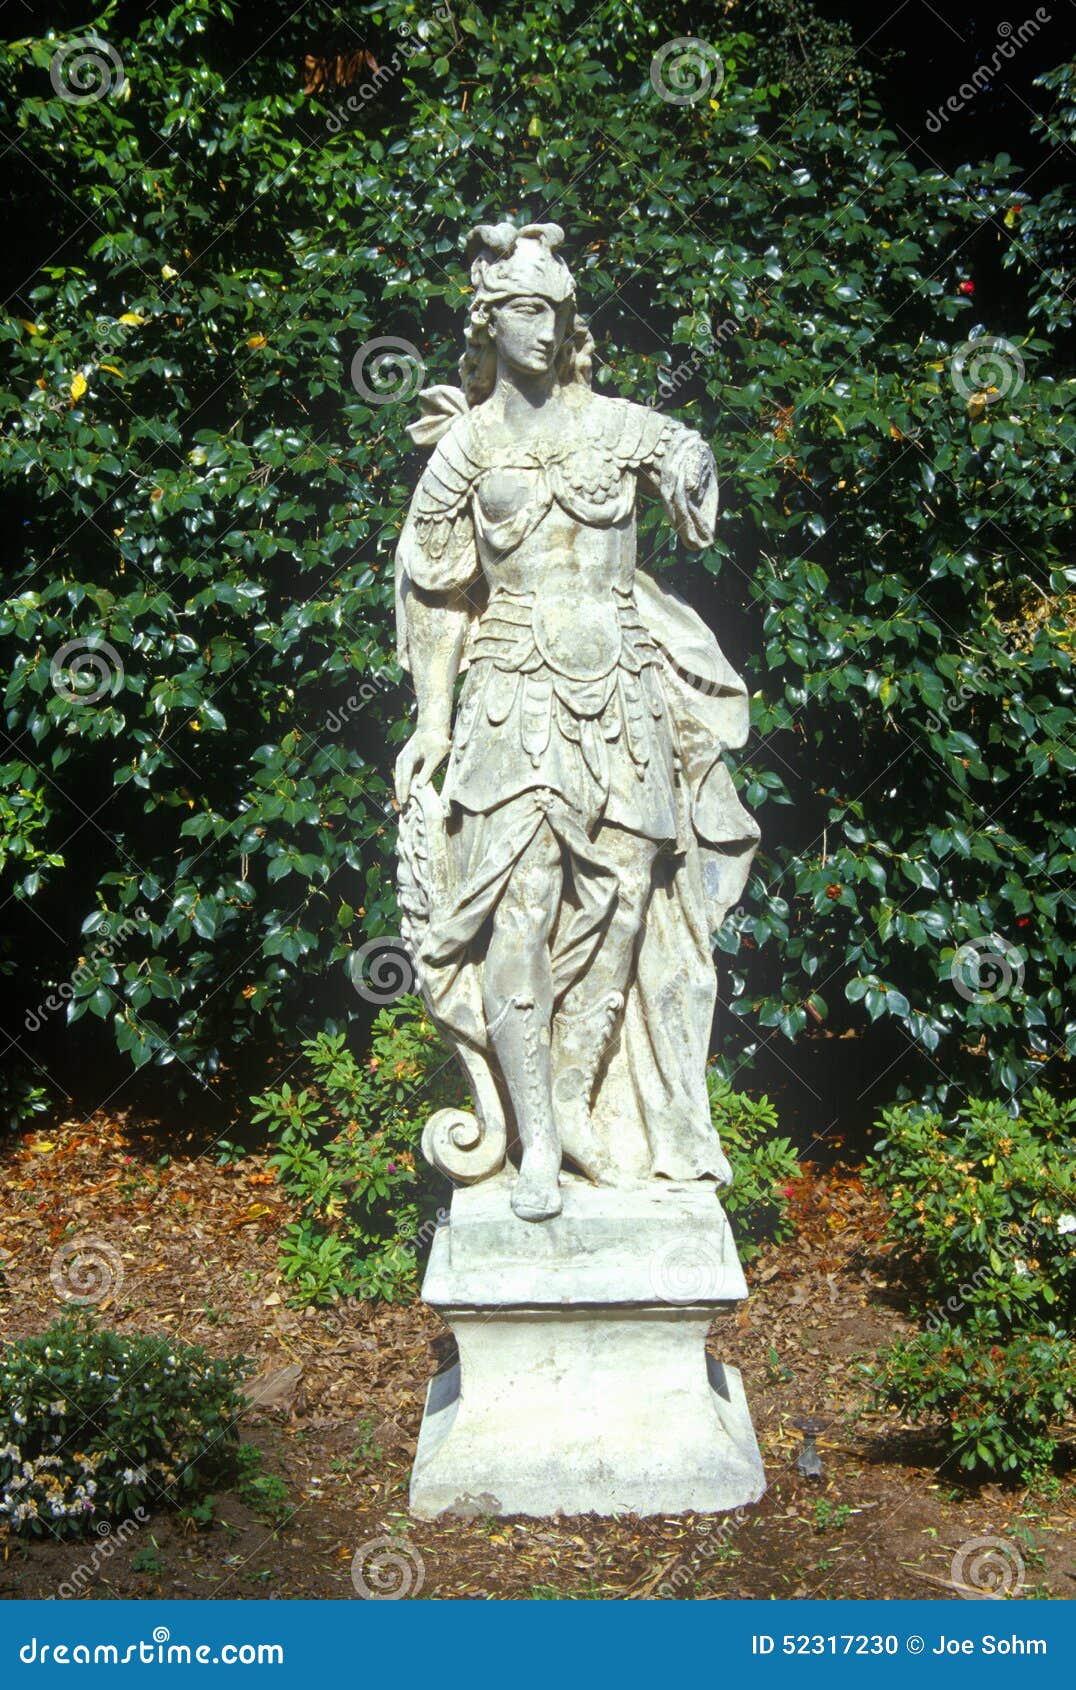 statuary in huntington library and gardens, pasadena, ca